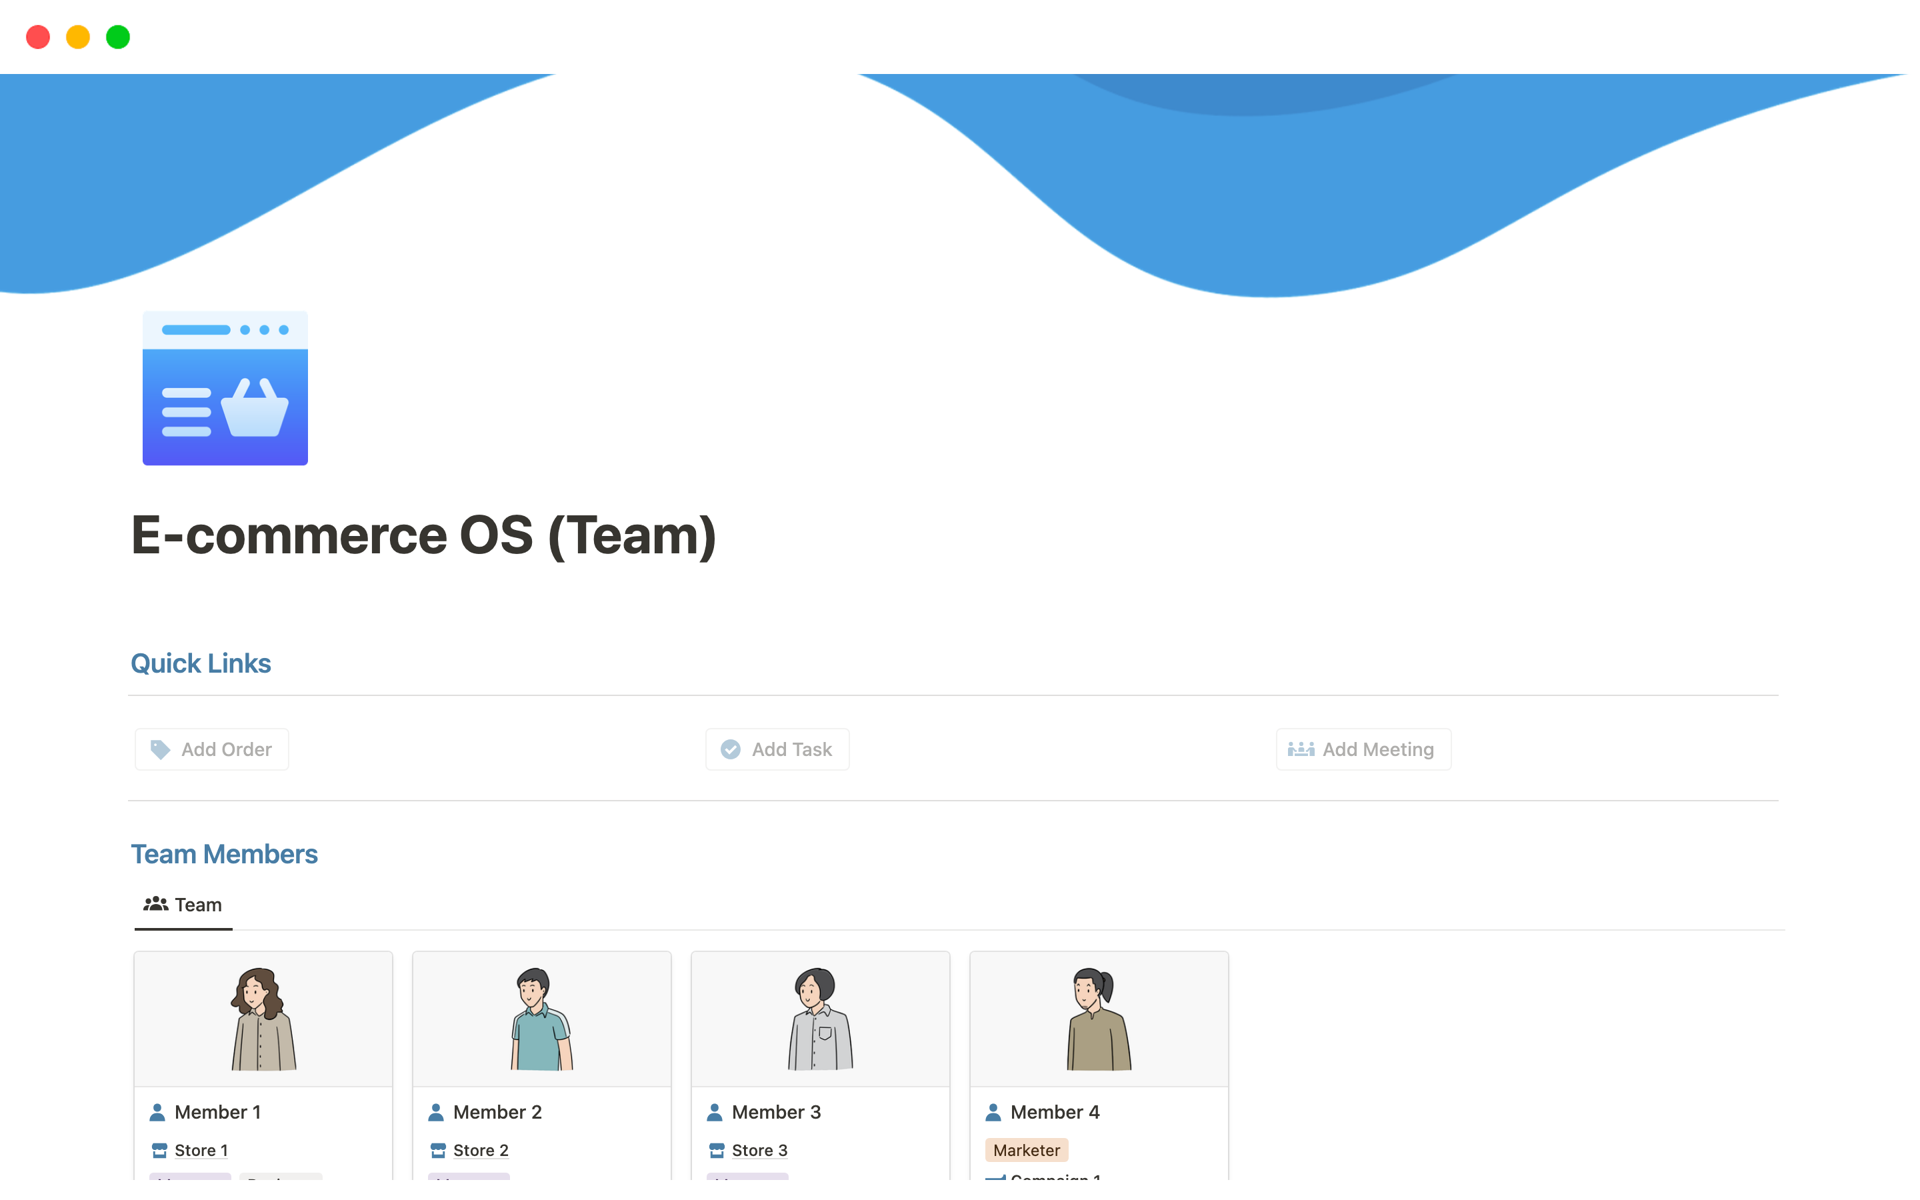 Vista previa de una plantilla para E-commerce OS (Team)